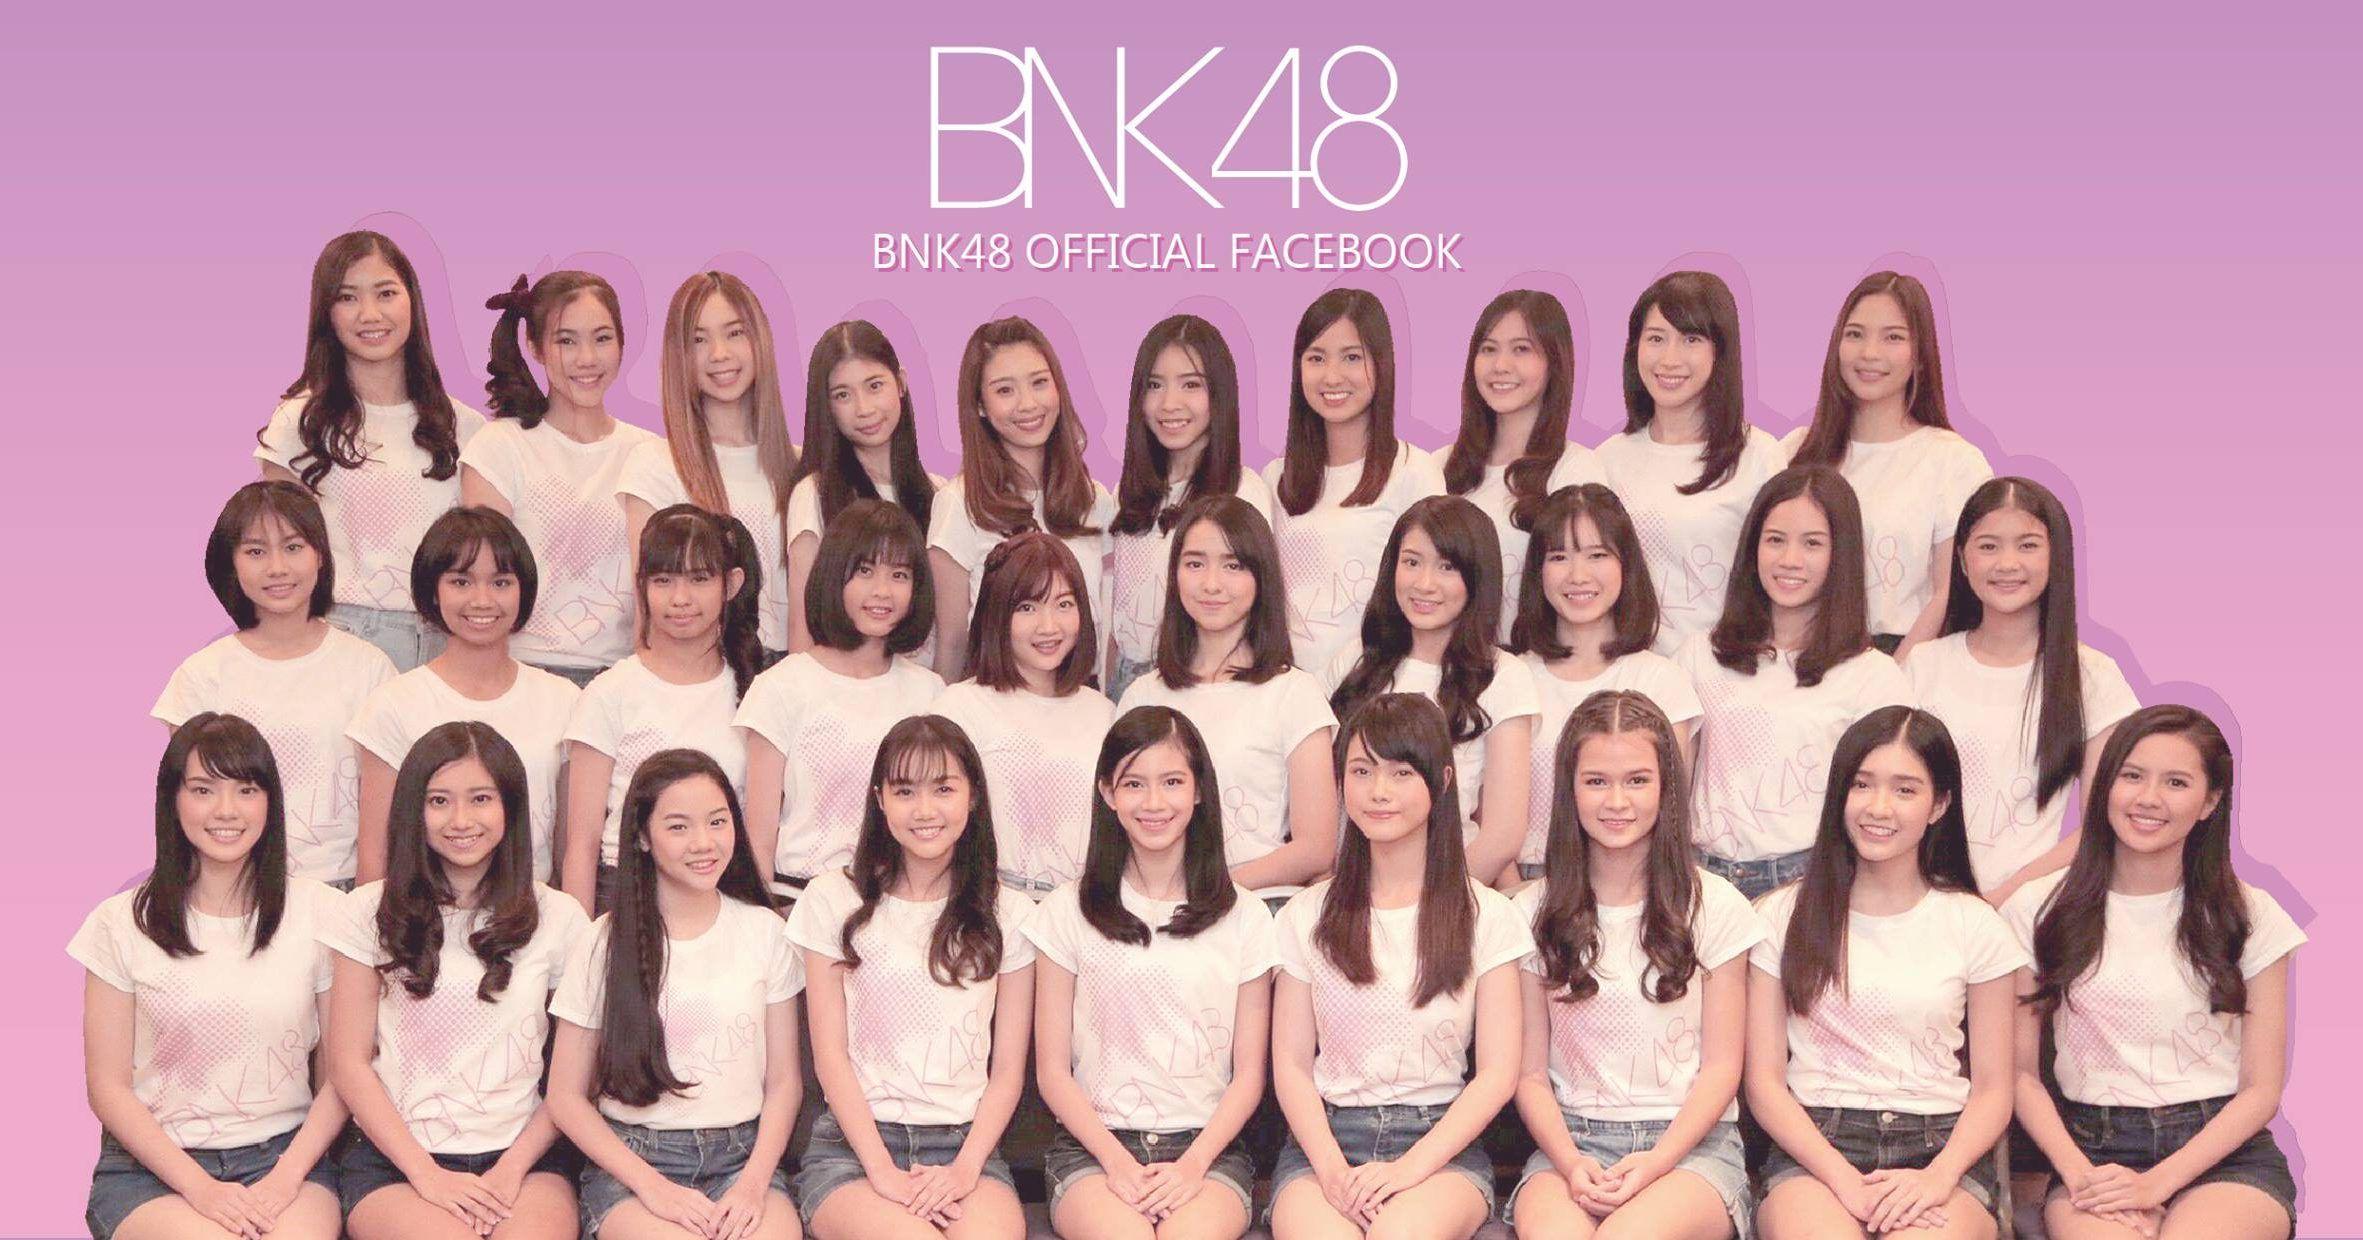 BNK48 ใครคือคนที่ใช่ที่สุด ไปดูกันเถอะ. ด็อทไลน์เวิร์ค